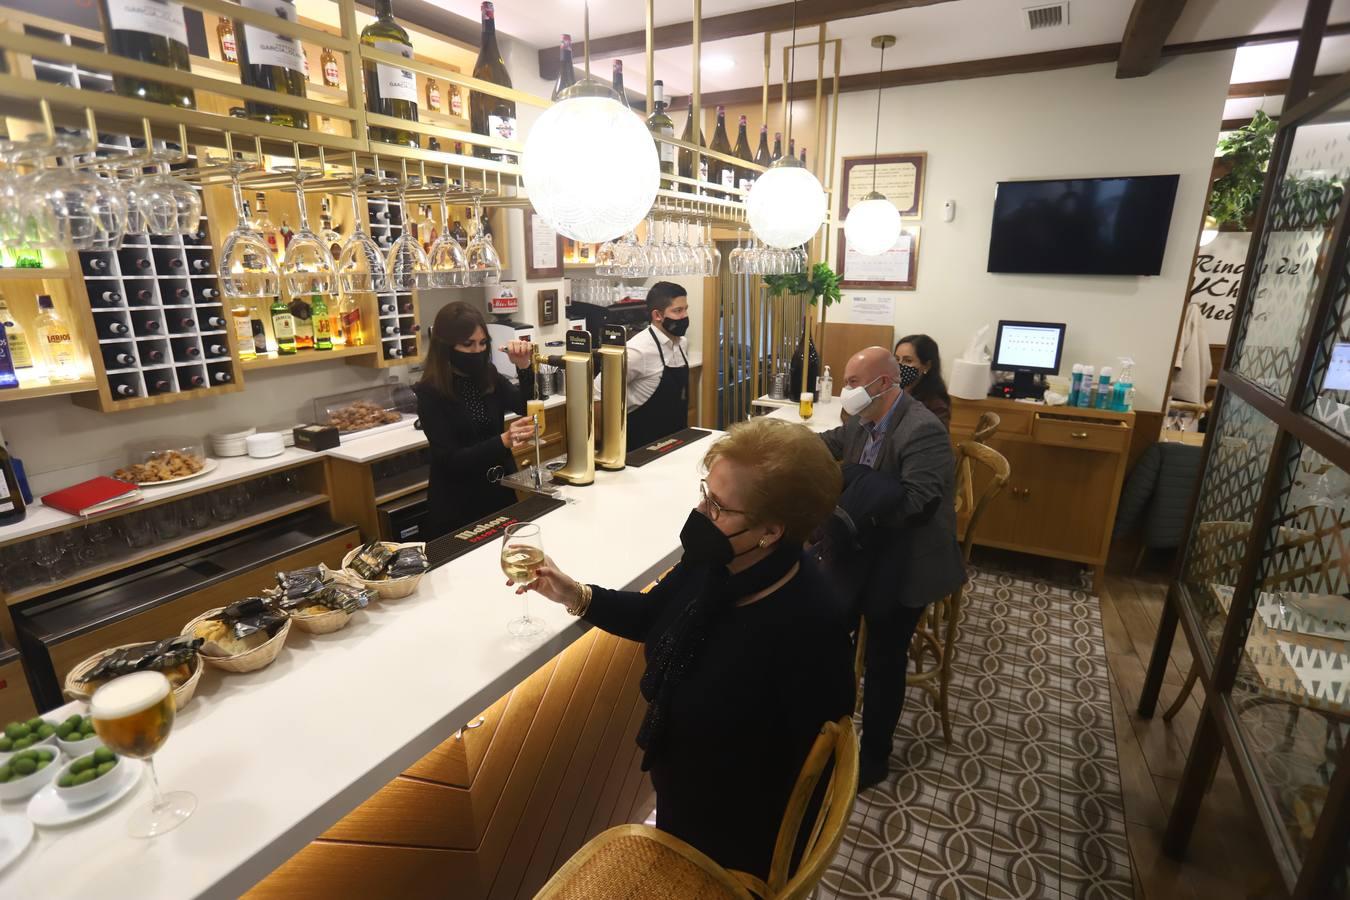 El día de la vuelta de las barras y nuevos horarios a los bares de Córdoba, en imágenes